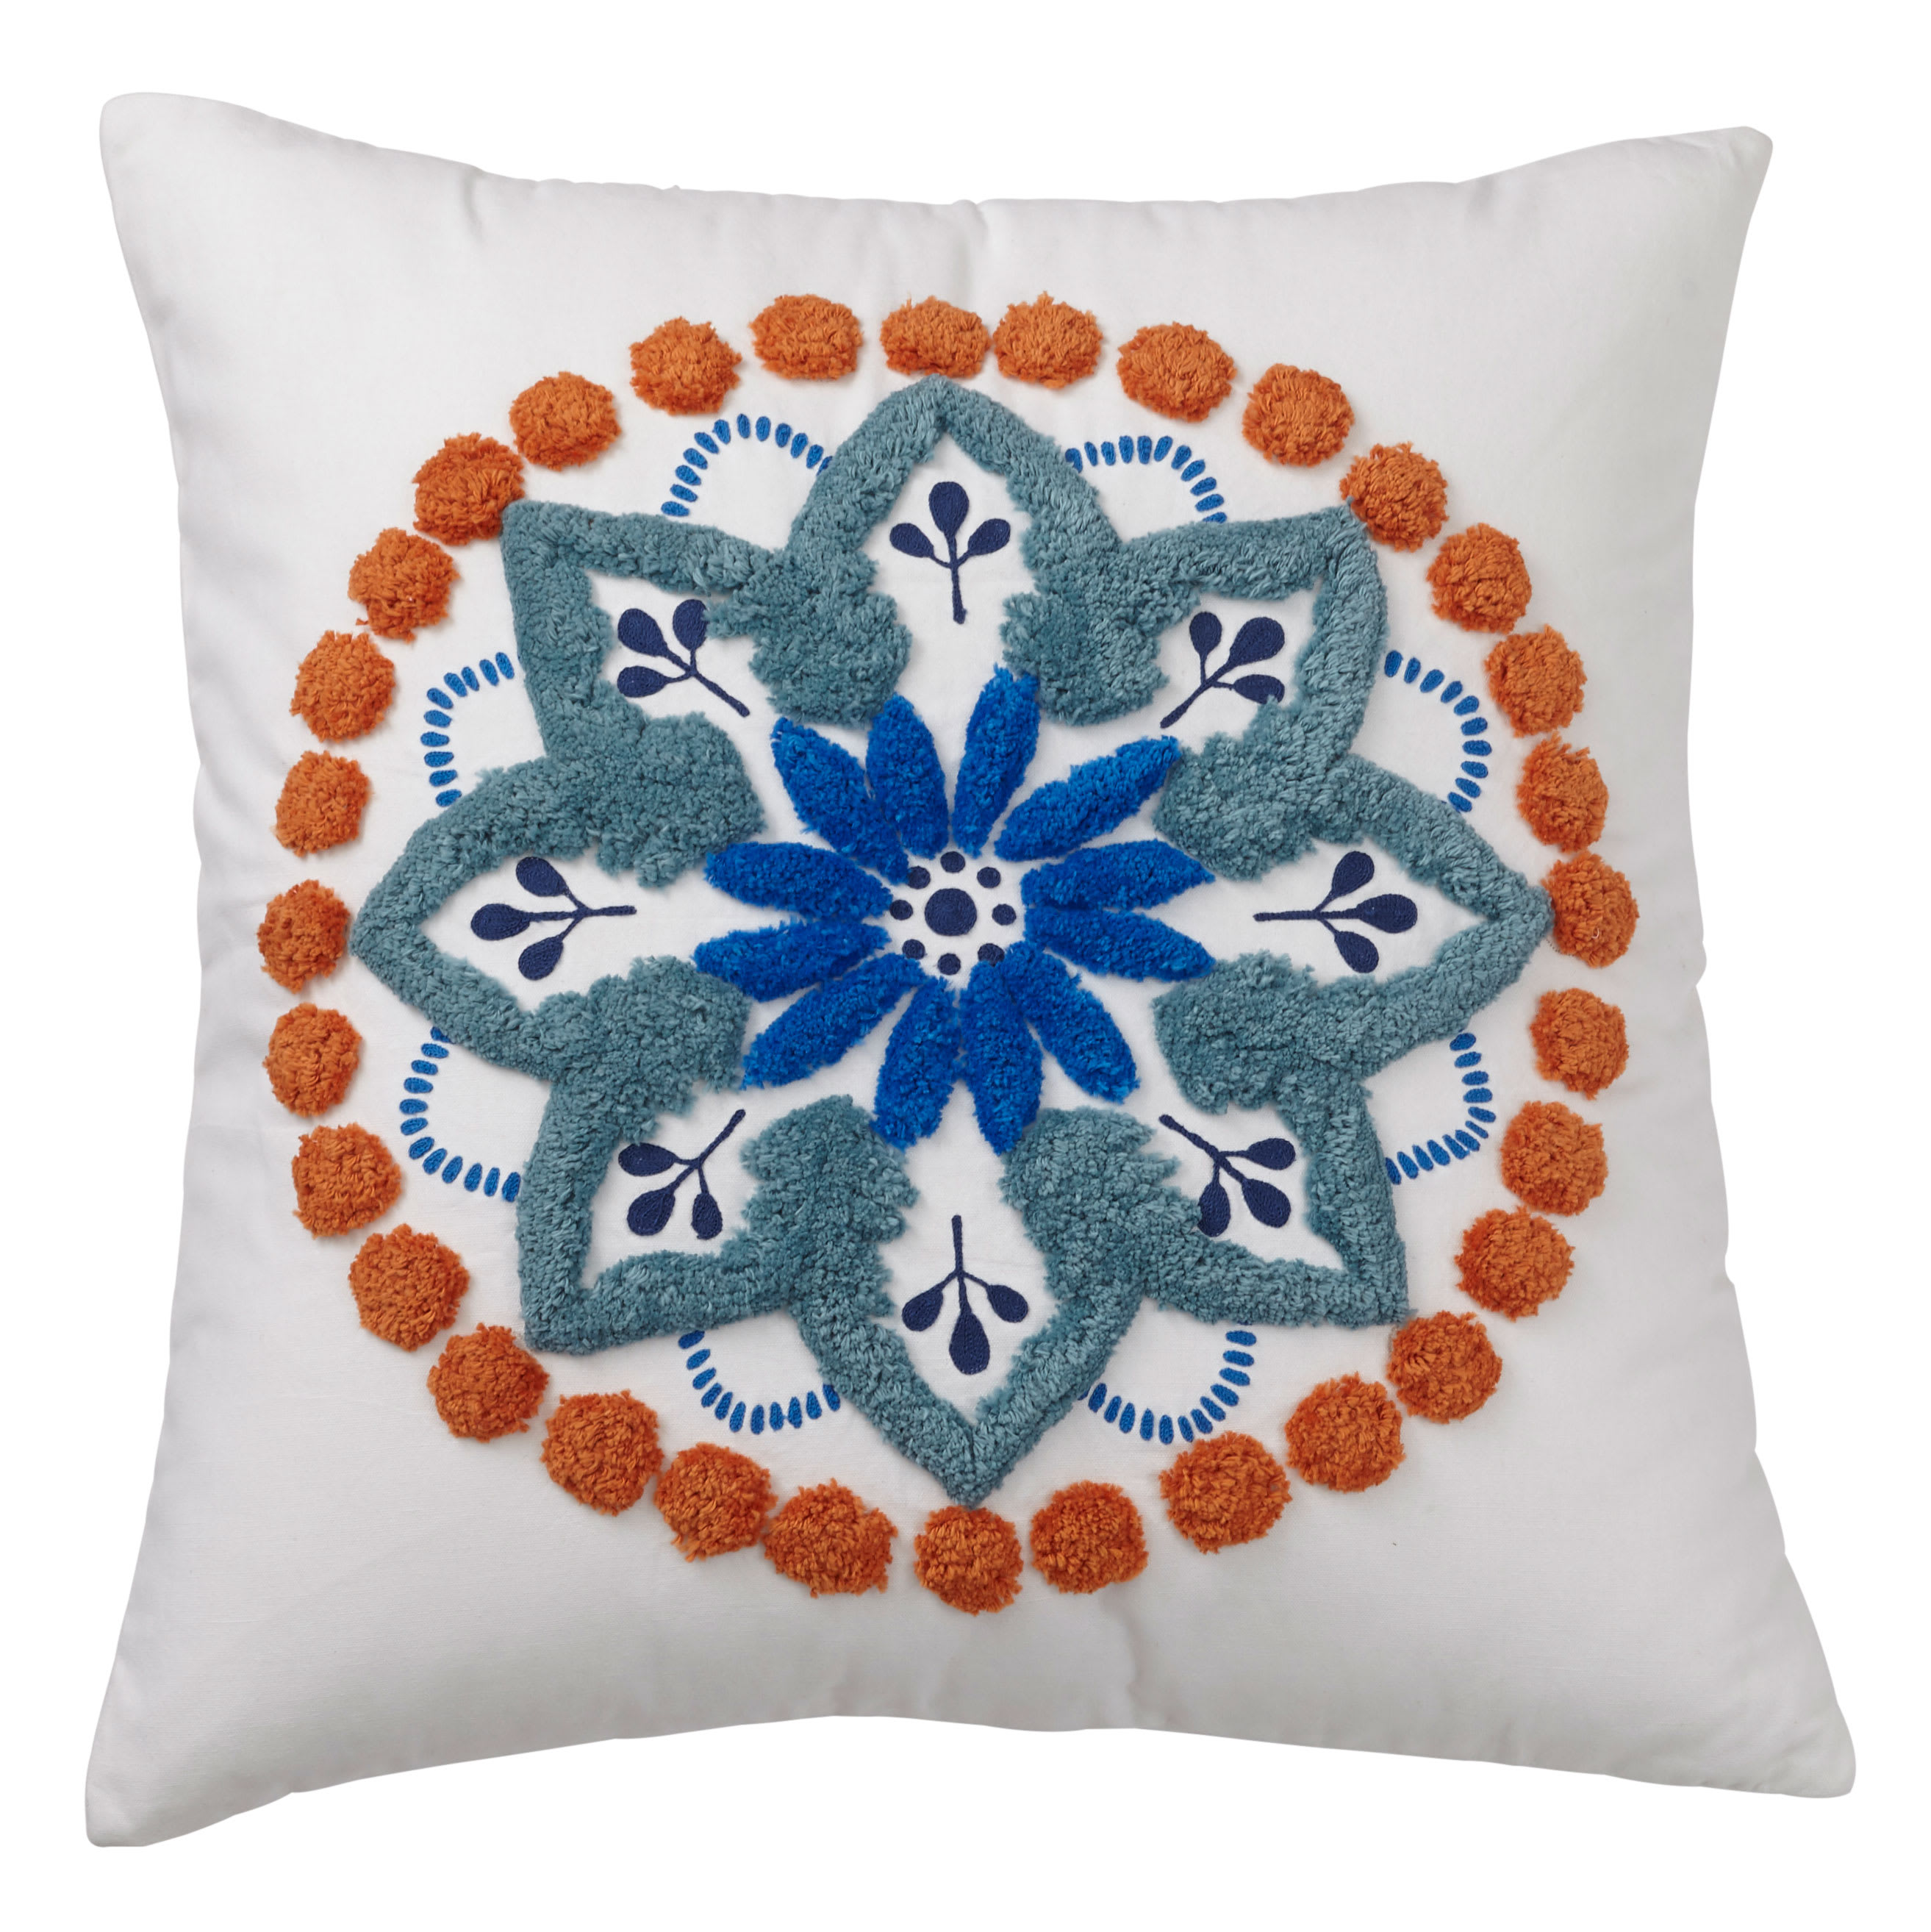 Cstudio Home Carlotta Decorative Pillow Cover - Suzani